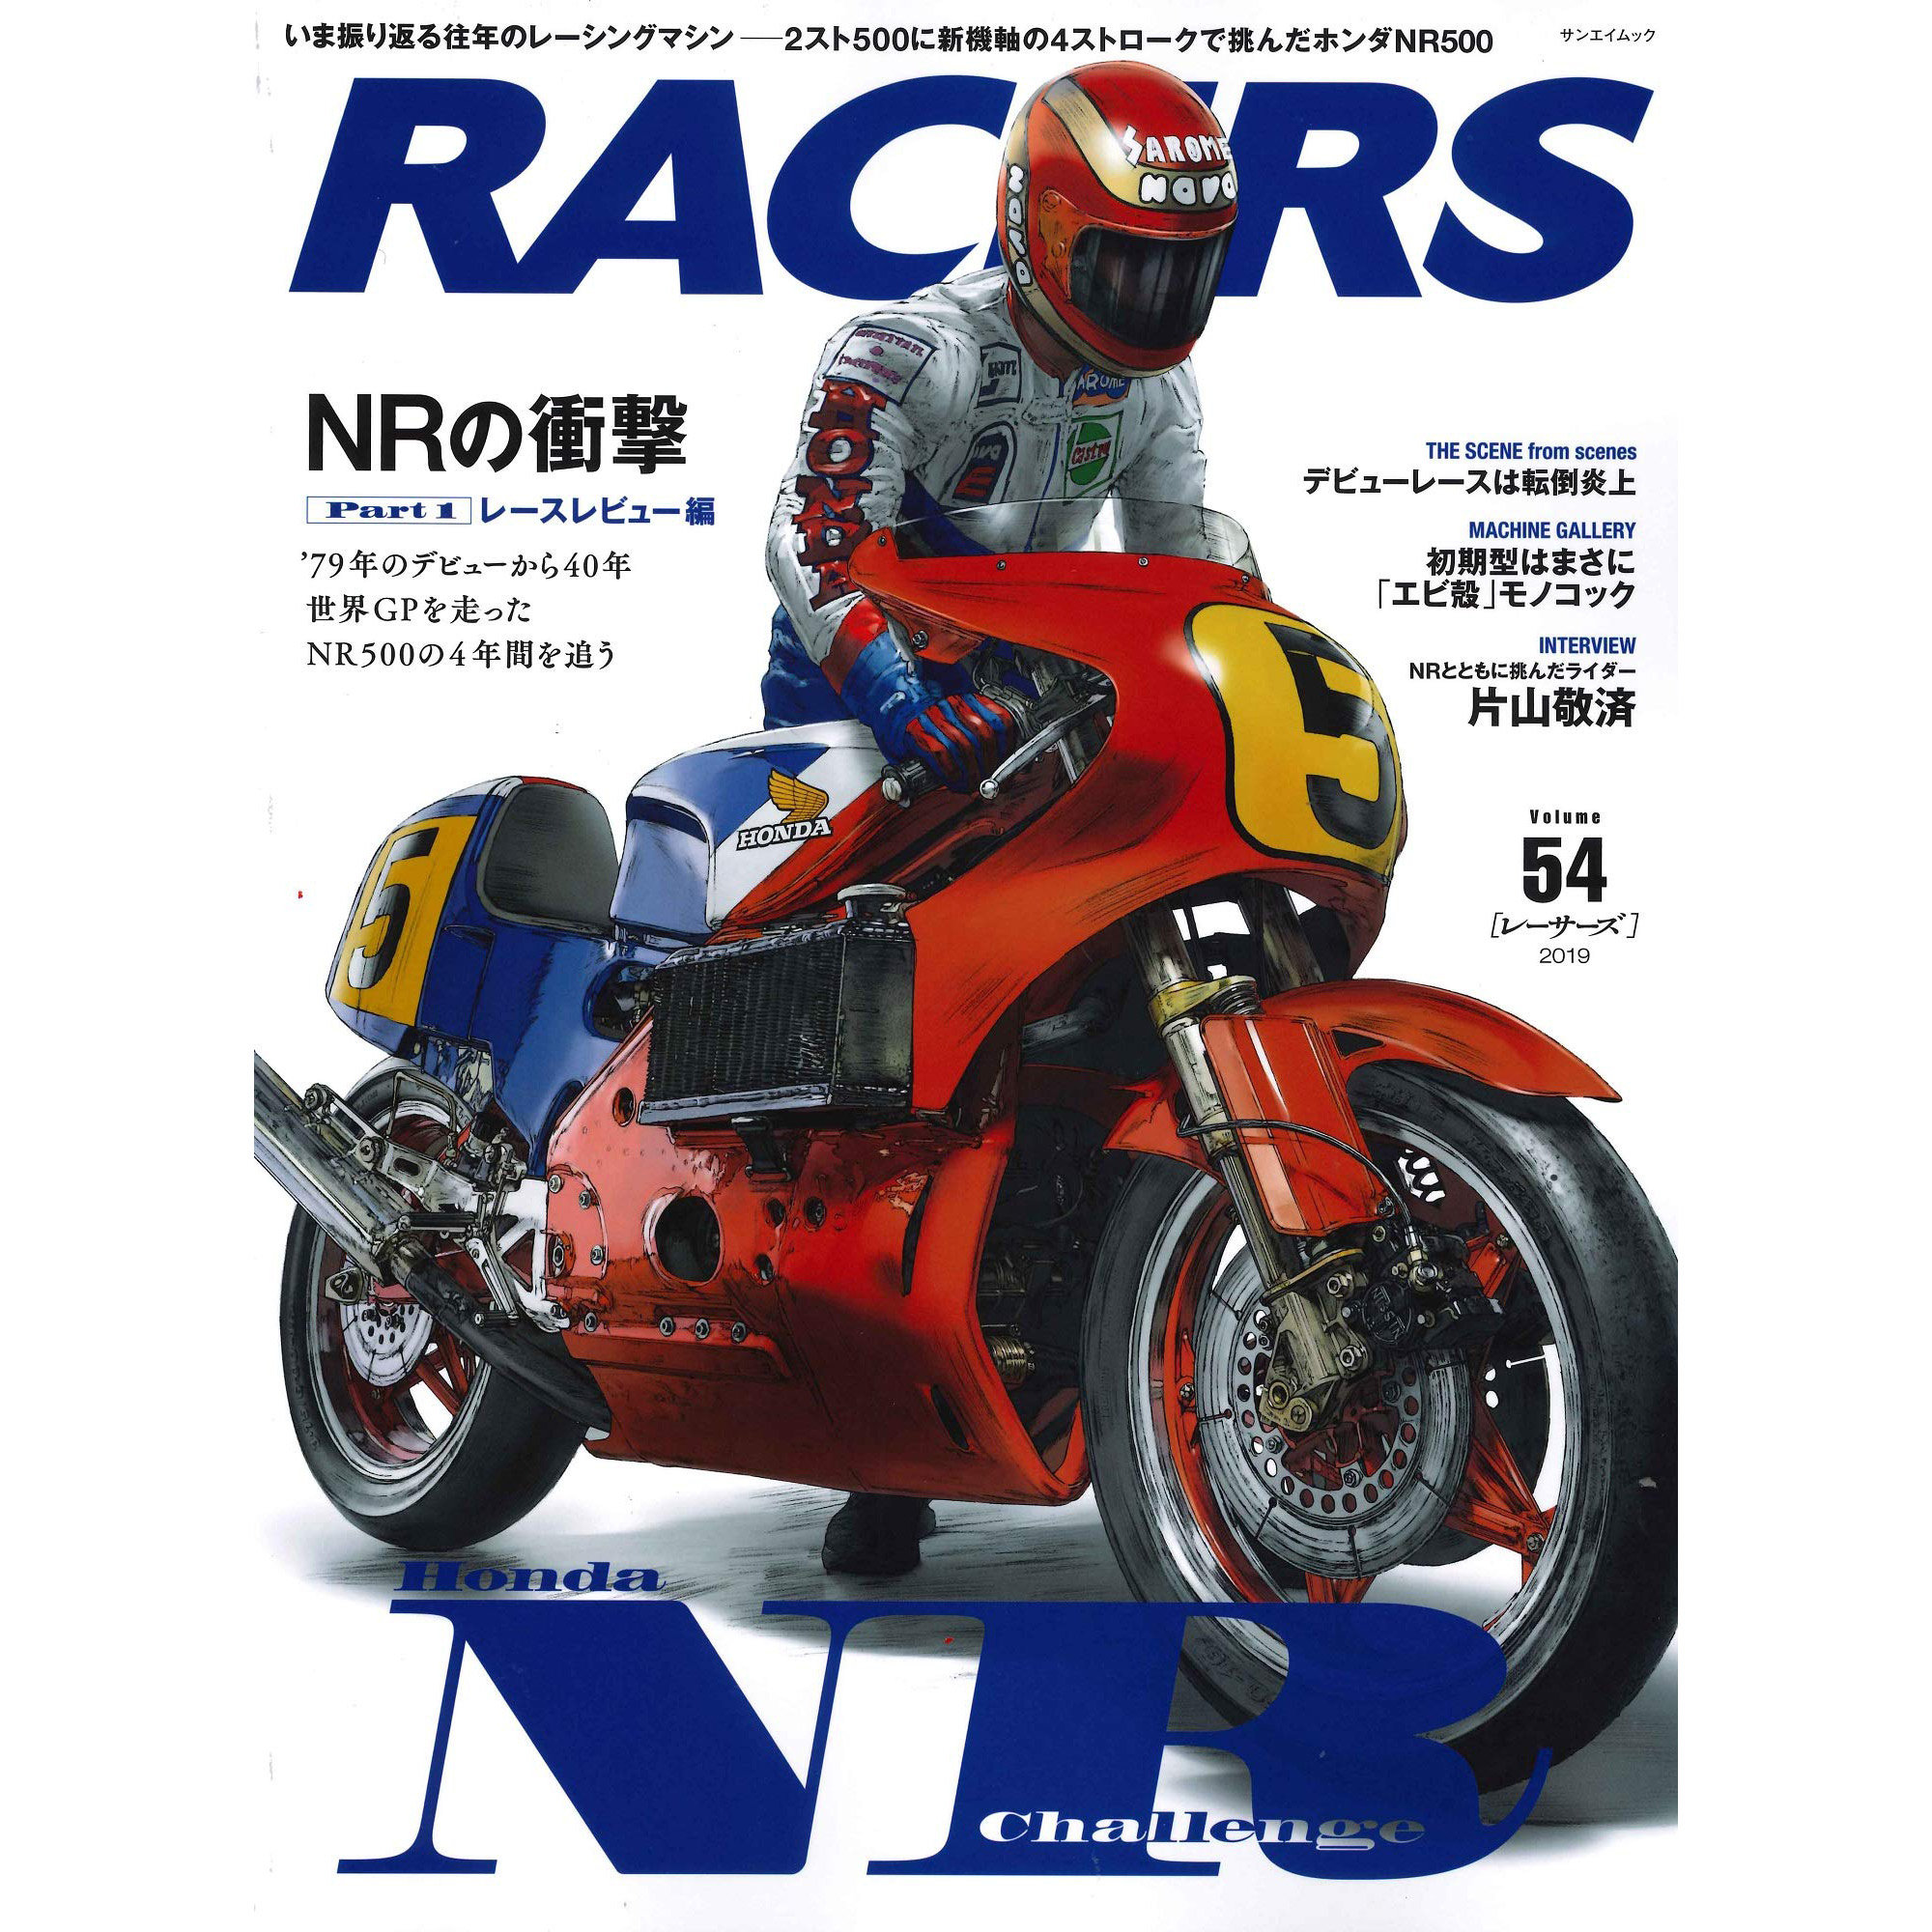 现货 RACERS VOL 54  レーサーズ  ホンダ NR500 Part.1 本田摩托车图书 日本日文版